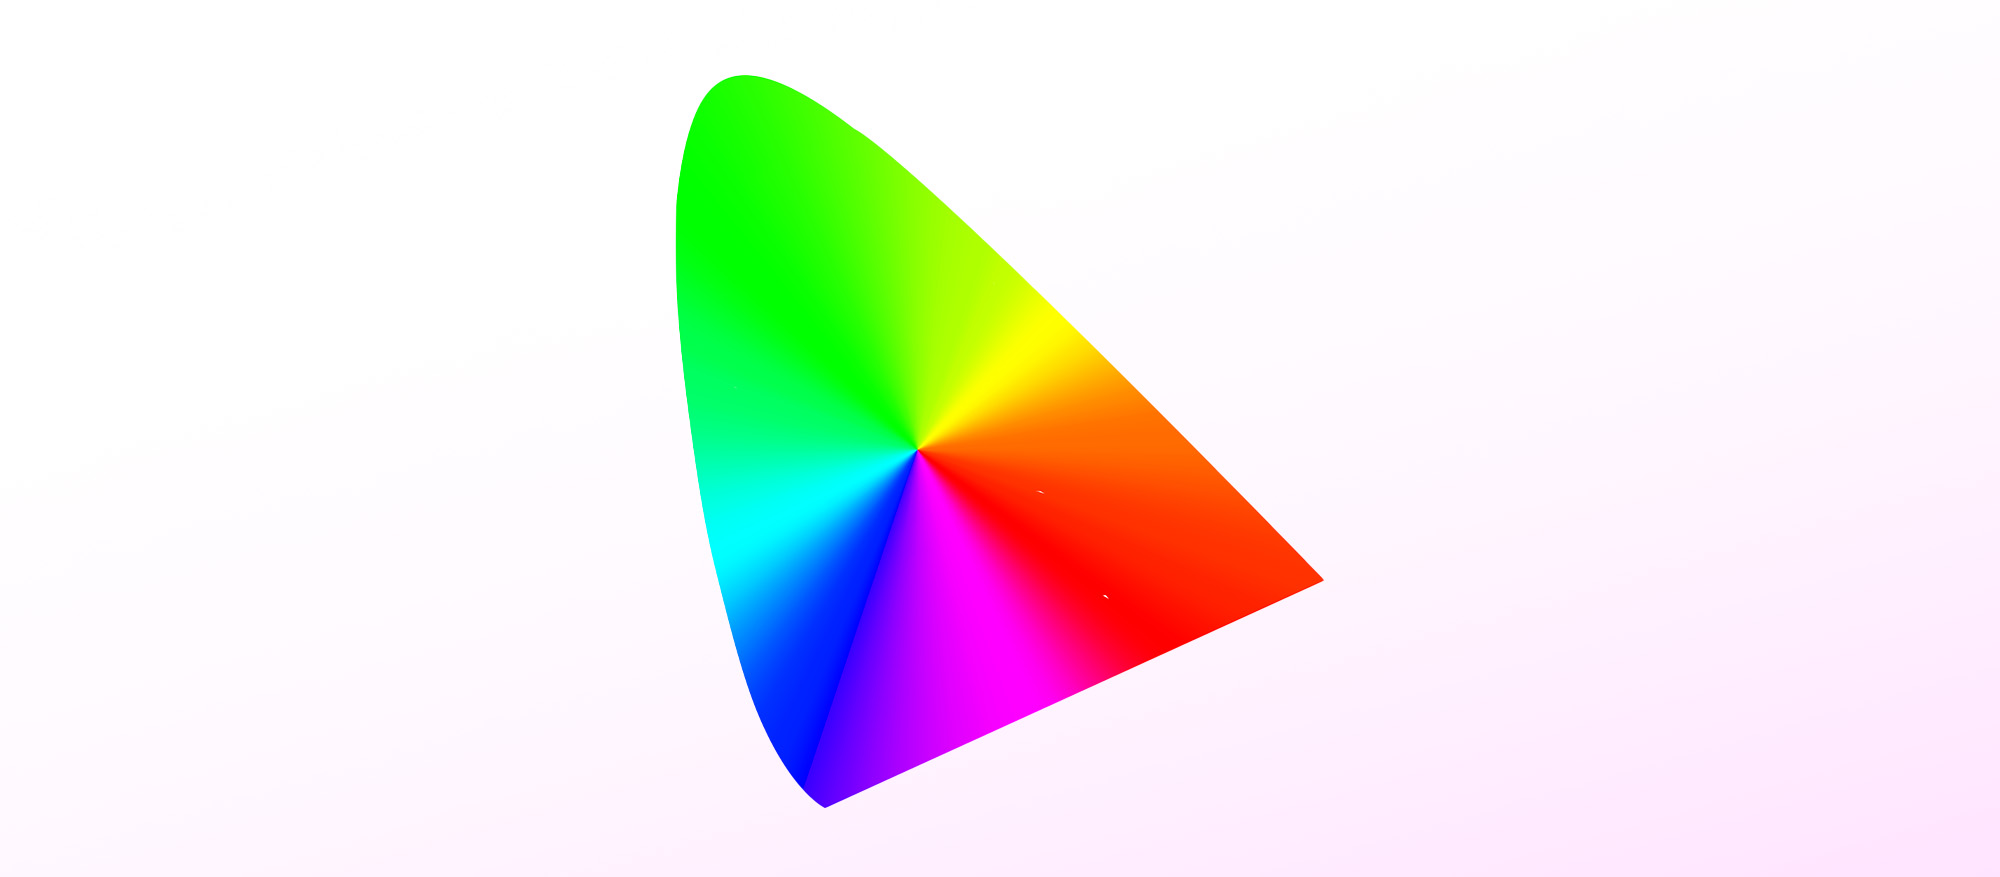 Das Icon für ICC Profile ist an die CIE-Normfarbtafel angelehnt und dient als Projektionsort für RGB Farbräume